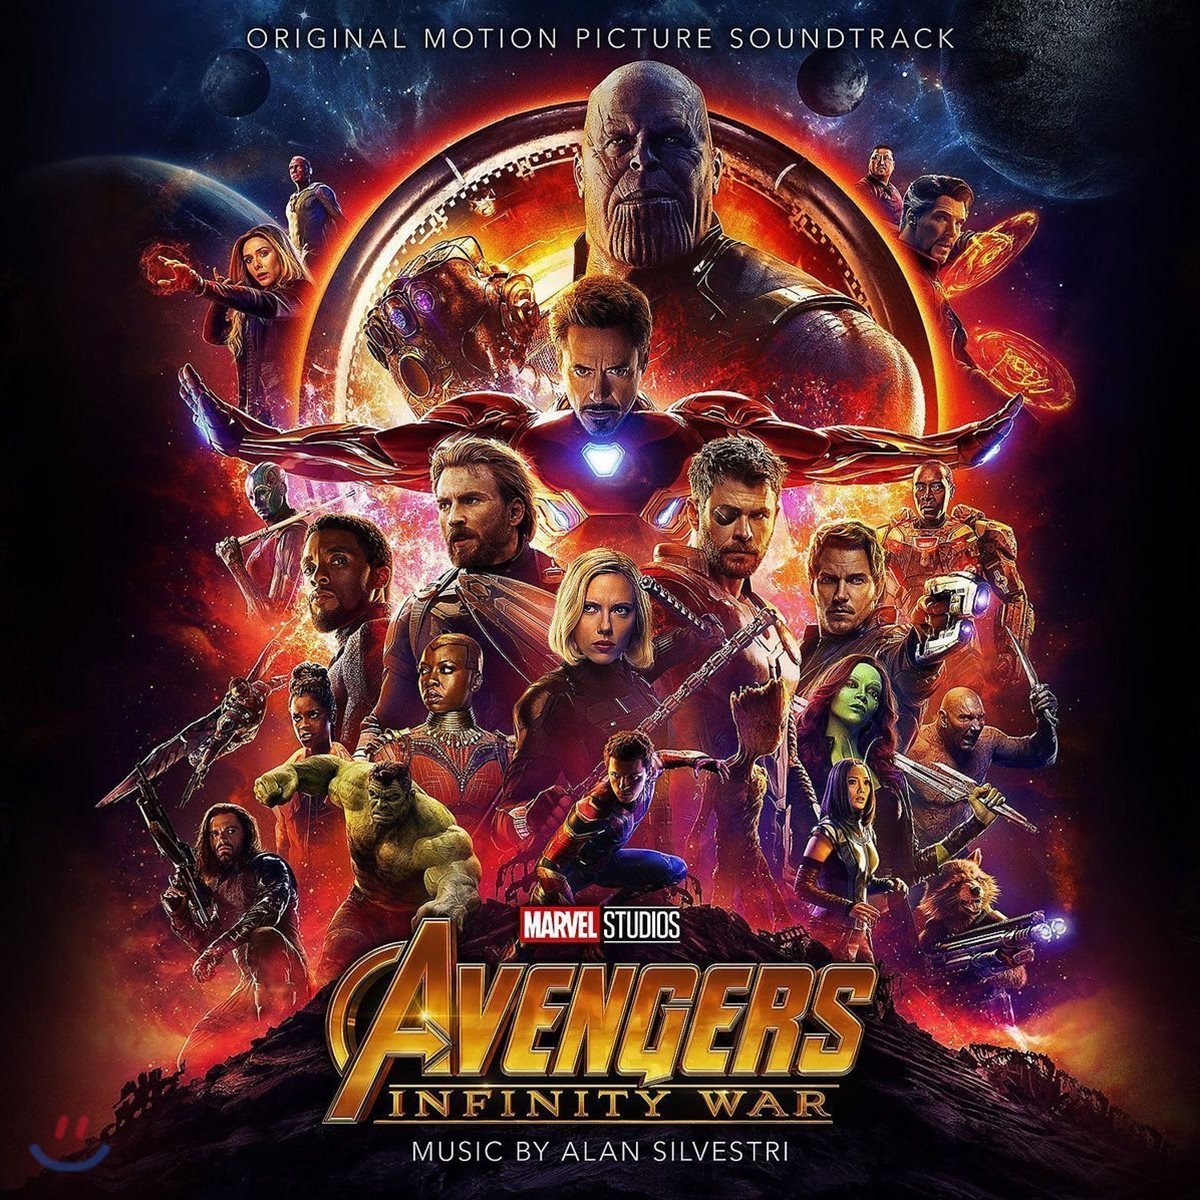 어벤져스: 인피니티 워 영화음악 (Avengers: Infinity War OST by Alan Silvestri)